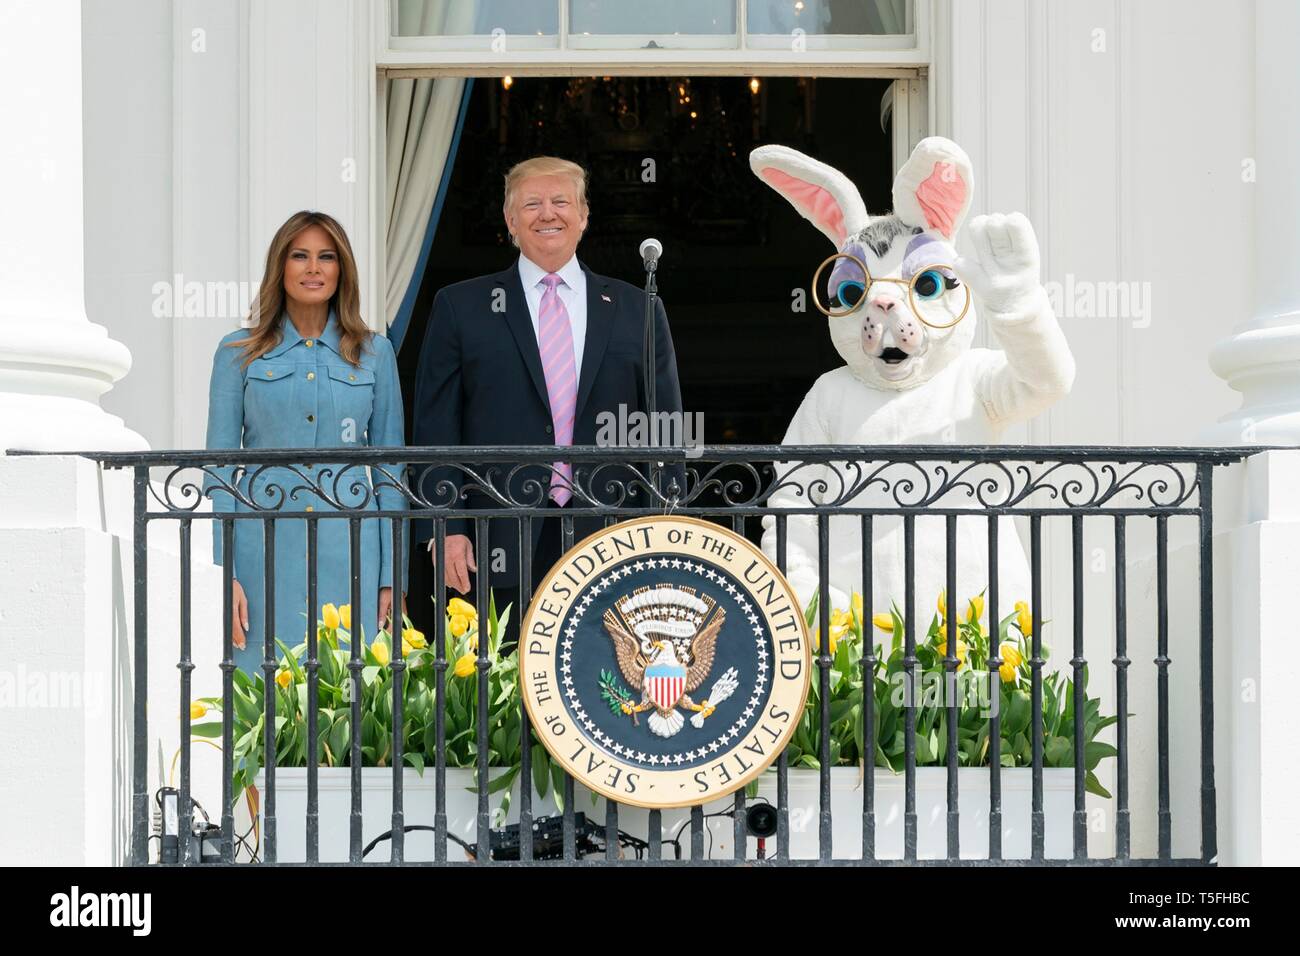 U.S presidente Donald Trump e la First Lady Melania Trump unire il coniglietto di Pasqua nell annunciare l'avvio dell'annuale White House Easter Egg Roll evento dal Sud Portico balcone della Casa Bianca Aprile 22, 2019 a Washington, DC. Questa è la 141anno per le relazioni annuali di primavera evento. Foto Stock